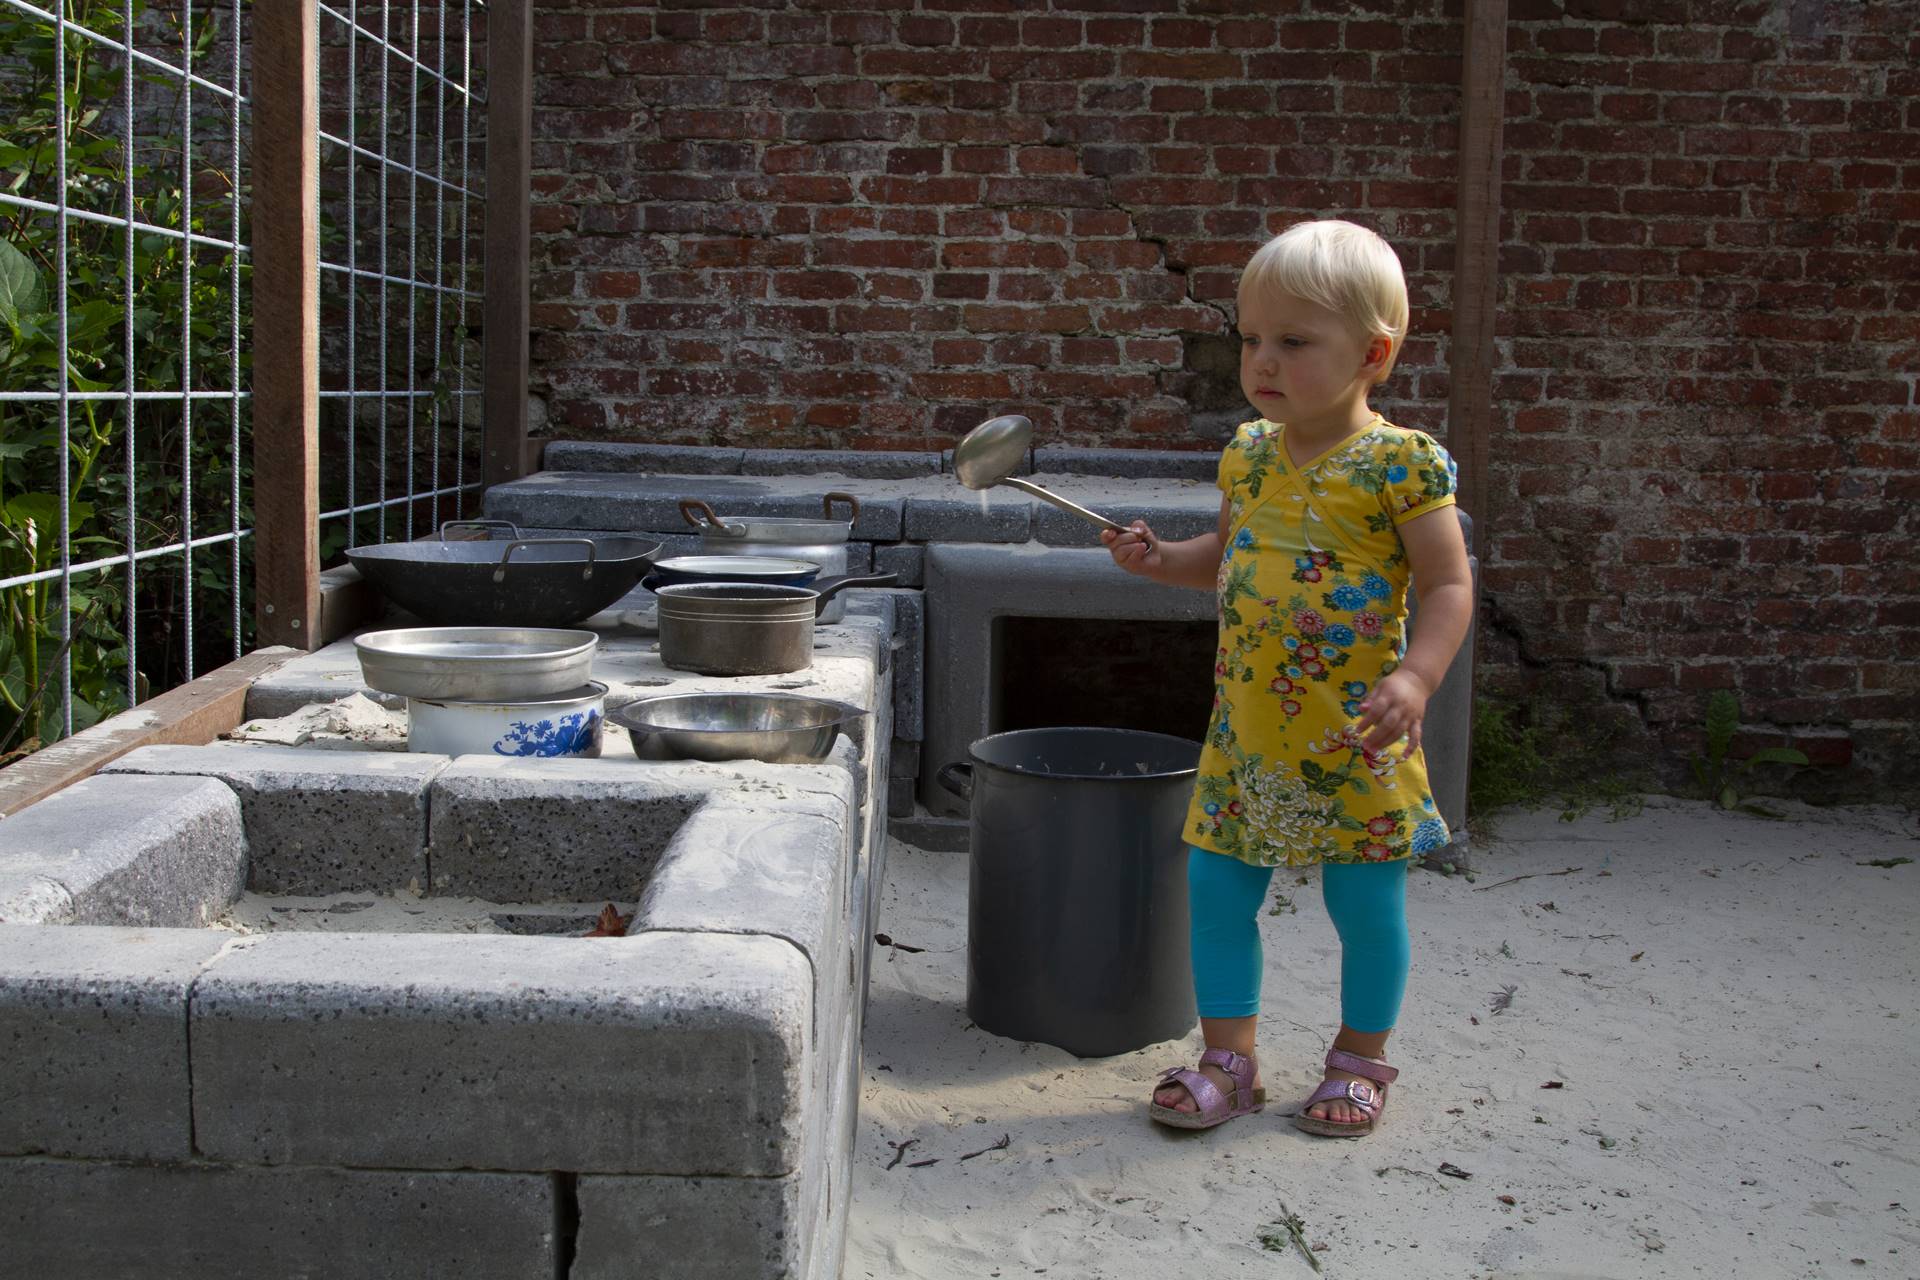 Project Hummelhuis - Meisje speelt bij een overdekte zandbak